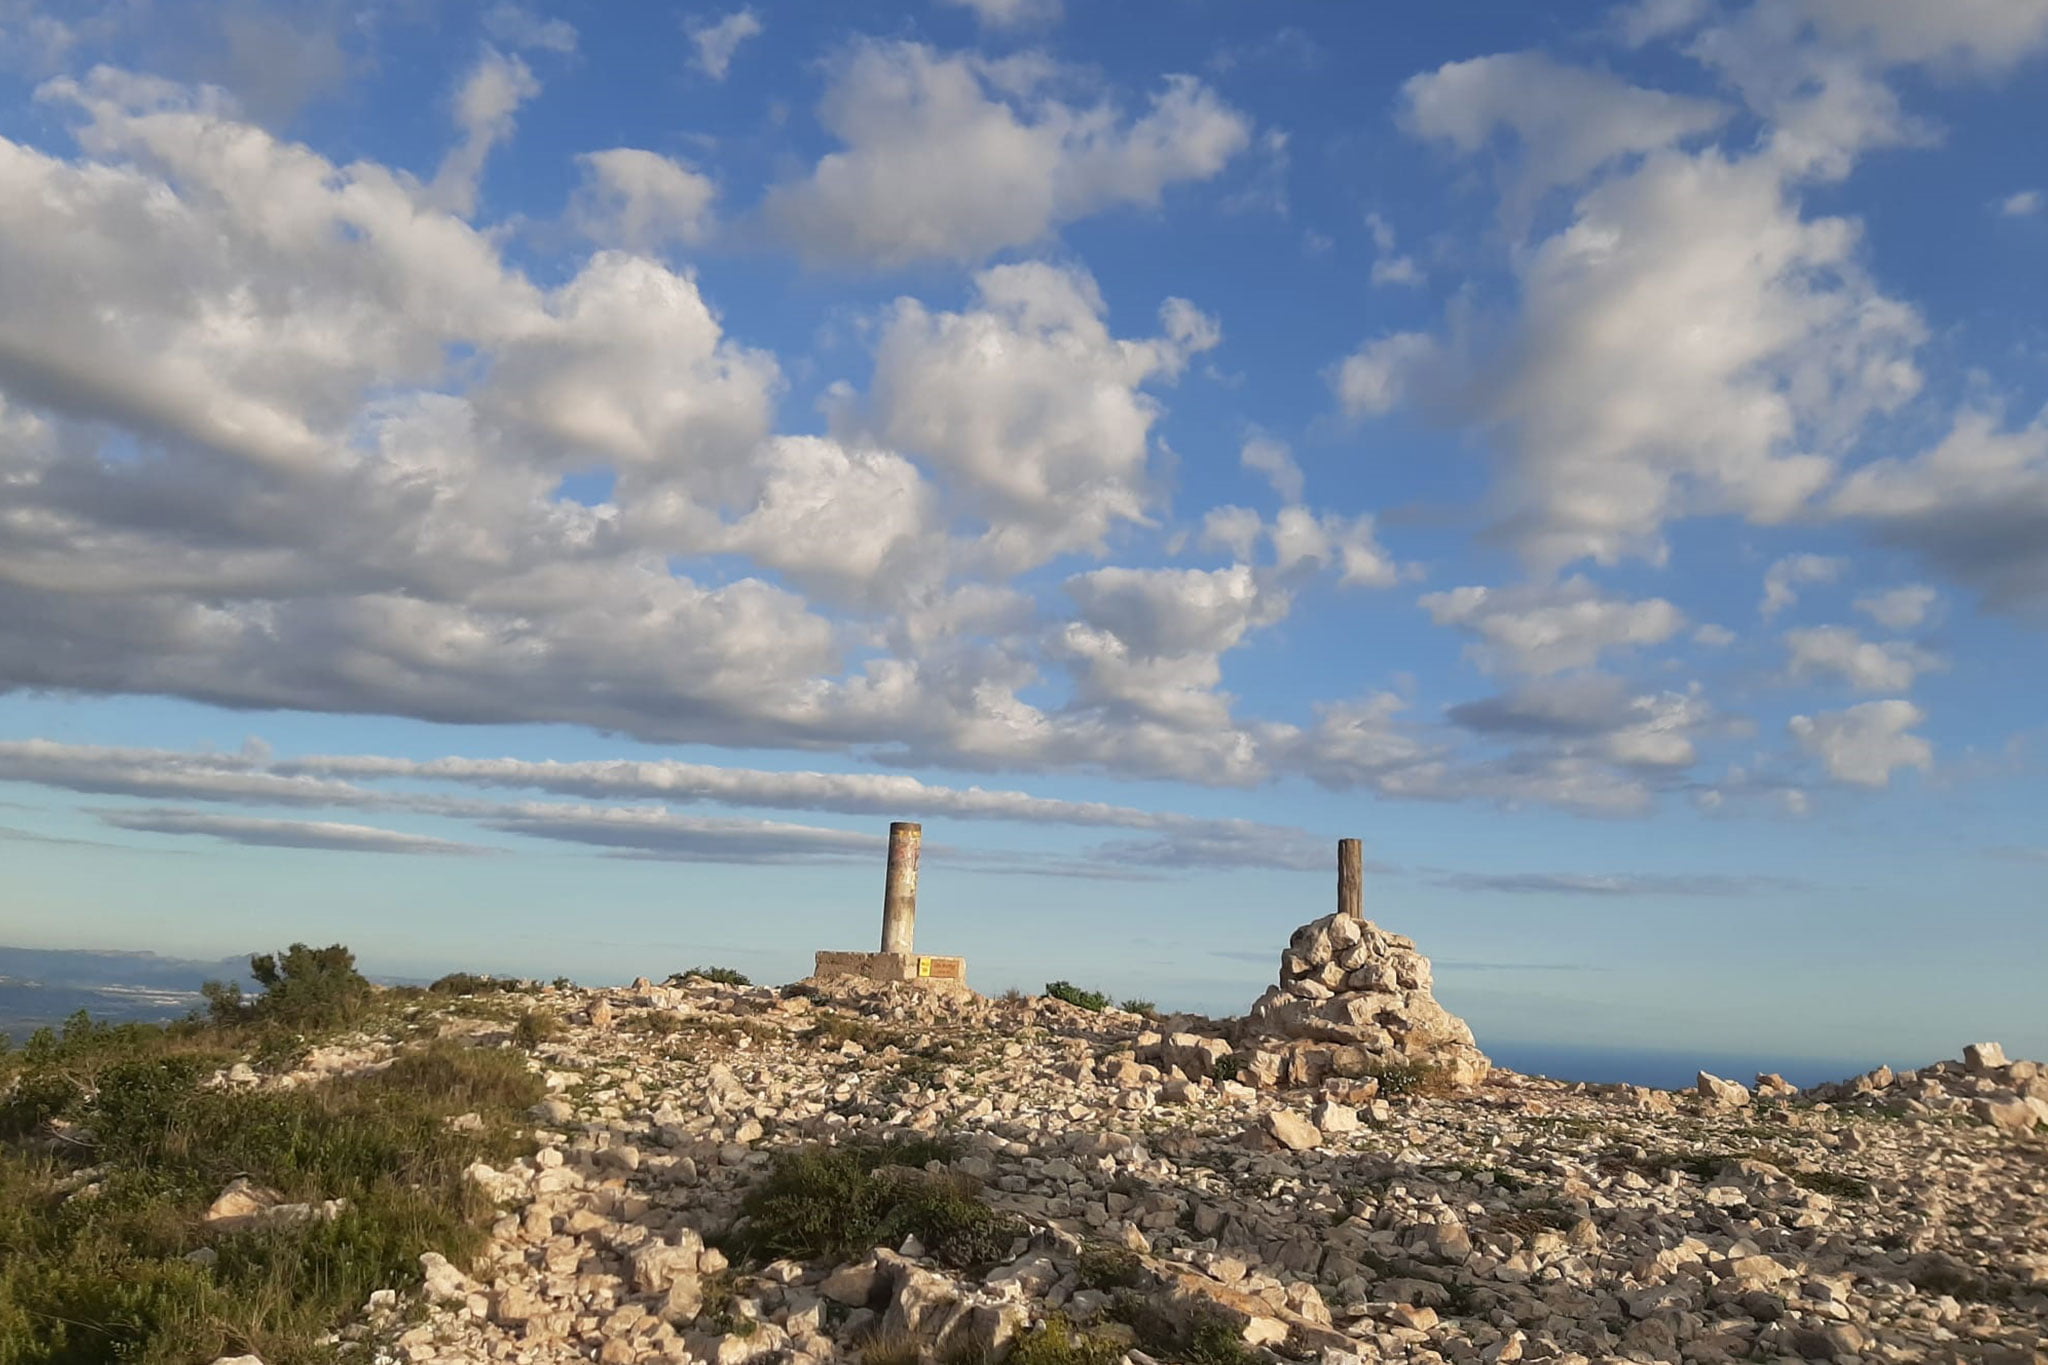 Imagen actual de lo que queda de la Creu del Montgó (tomada en septiembre de 2020). Fuente: CEX, Centre Excursionista de Xàbia